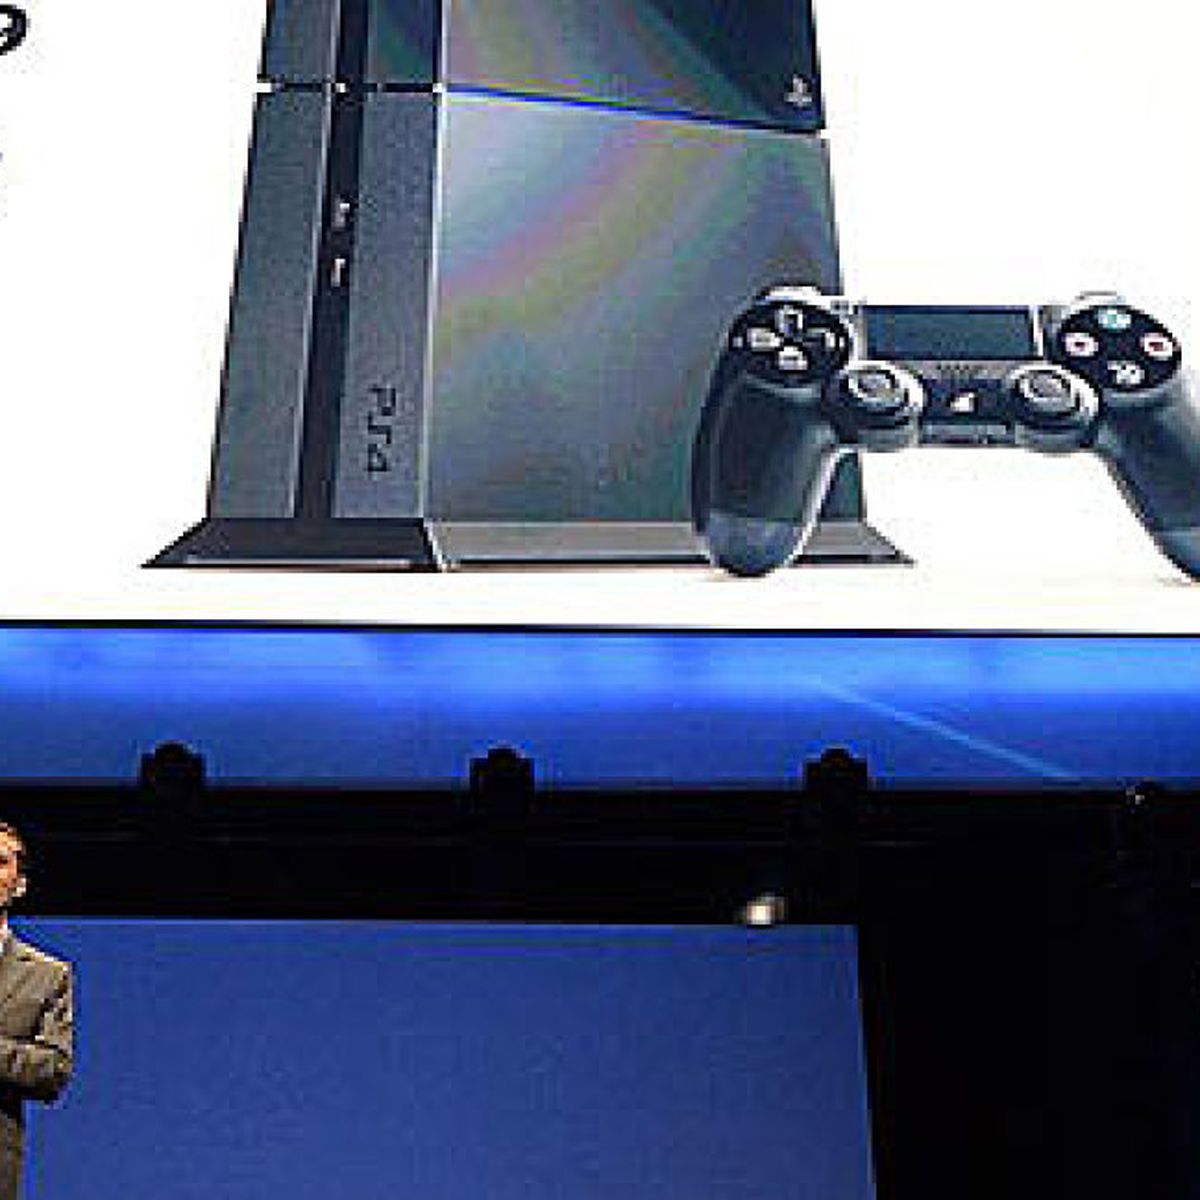 Playstation 4 sin mandos Consolas de segunda mano y baratas